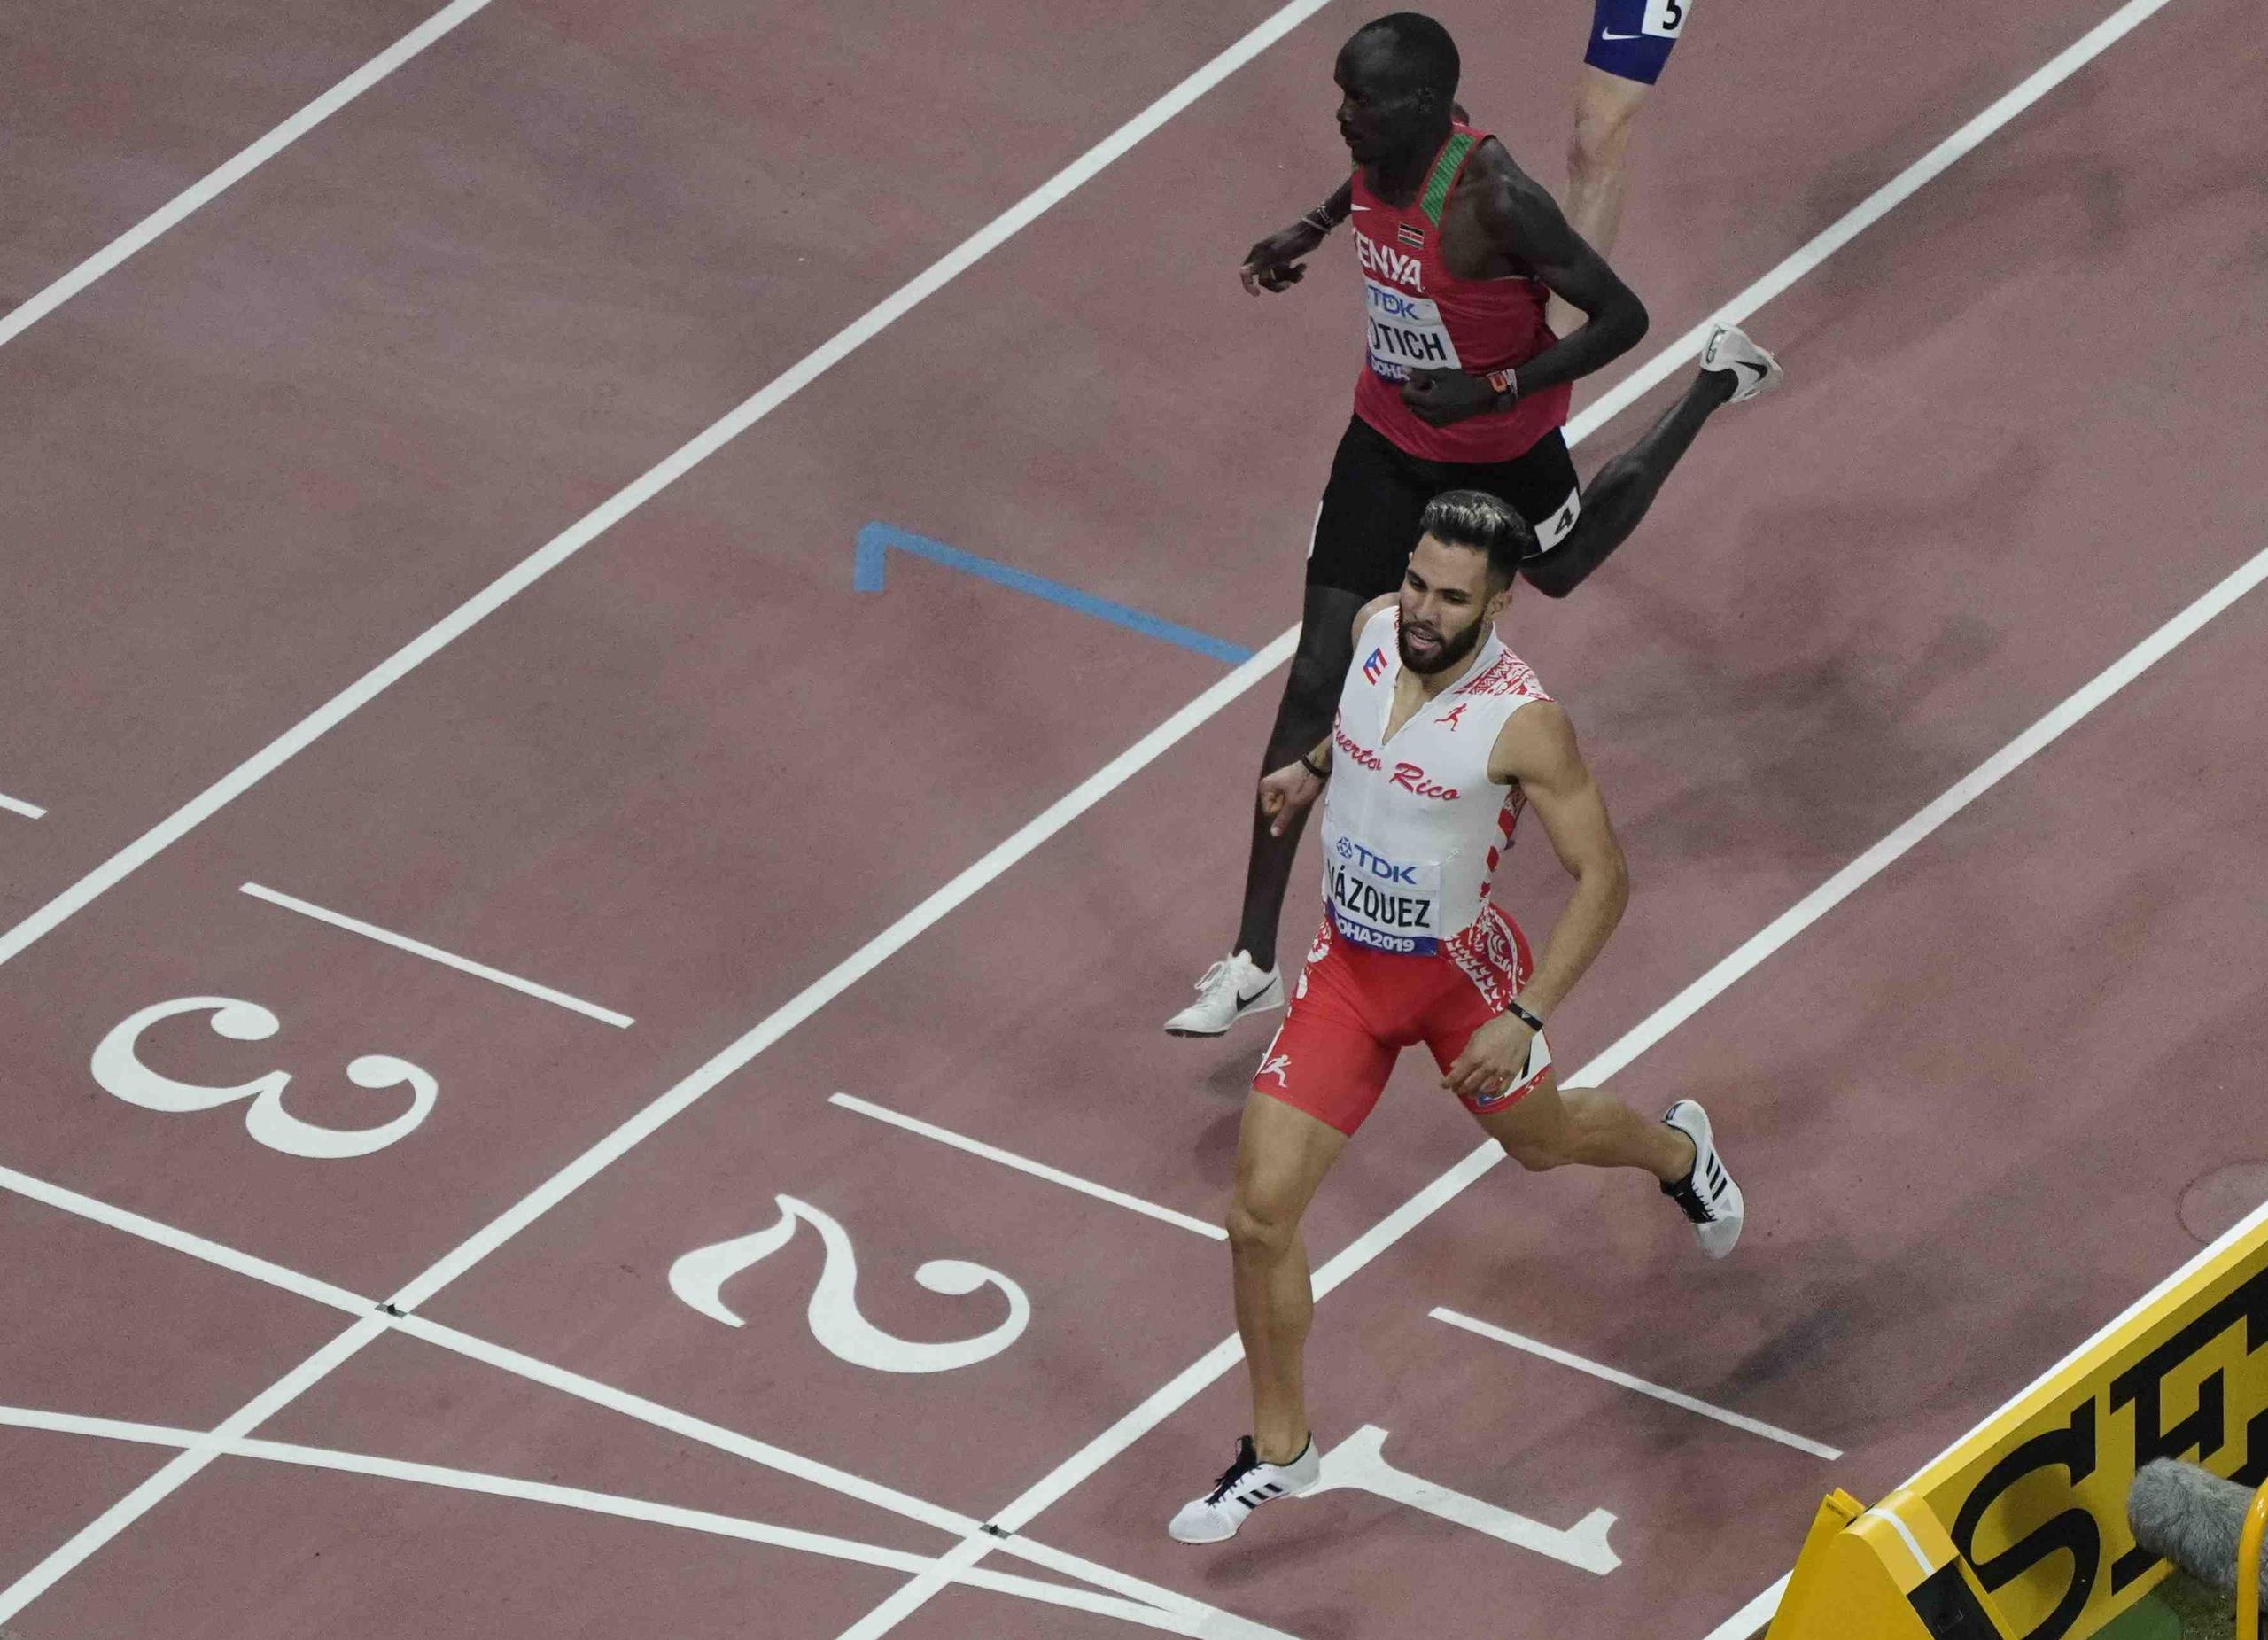 Vázquez cronometró 1:43.96 en la carrera. (AP)